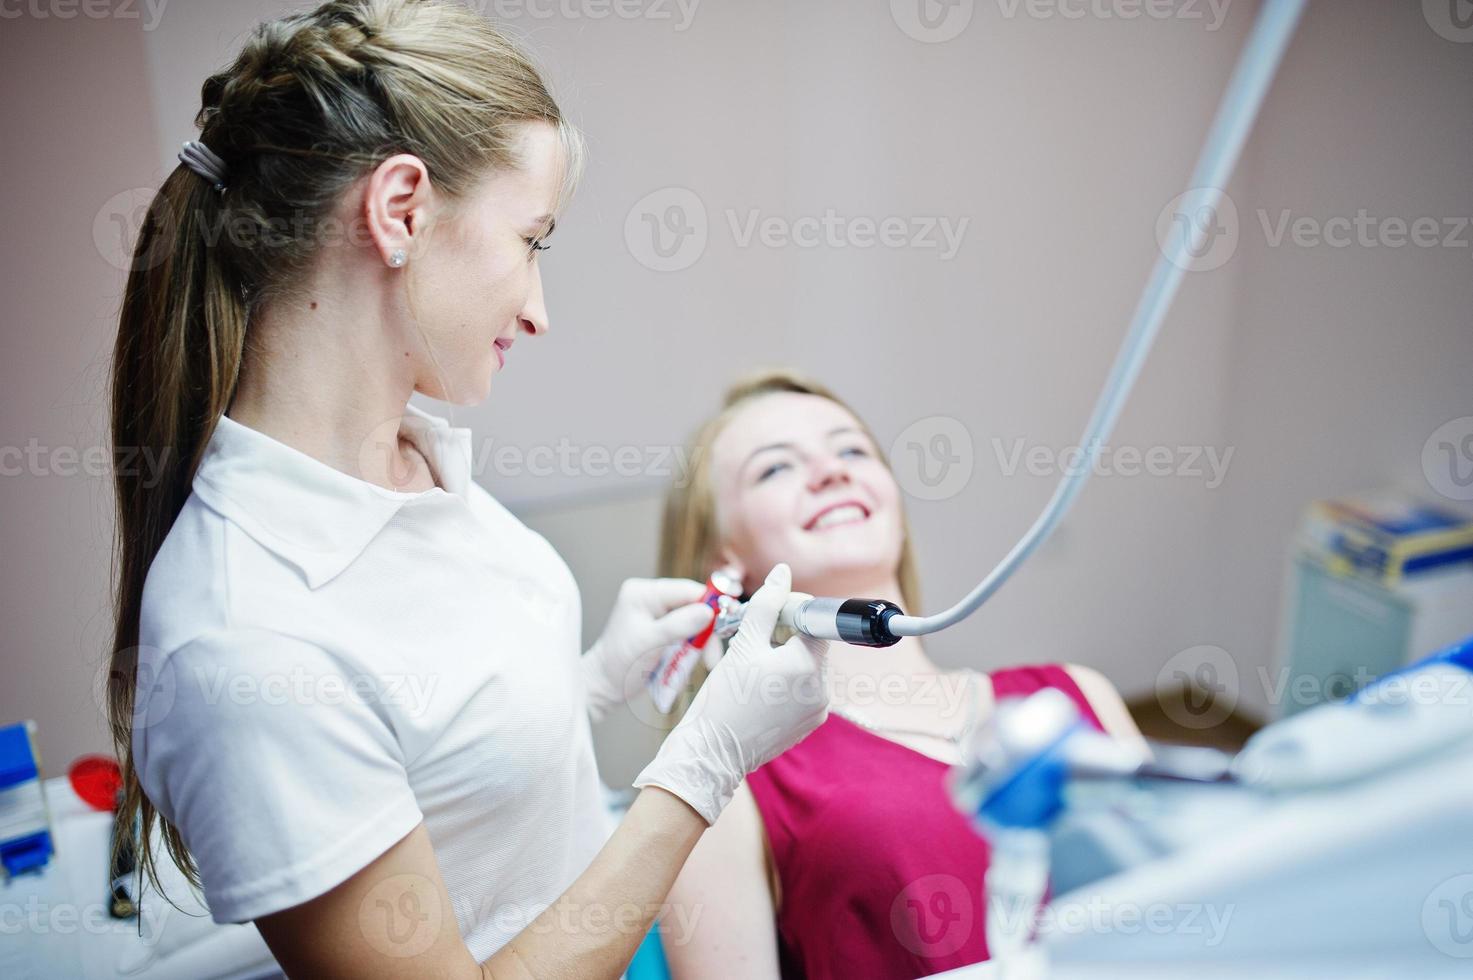 paciente atractiva con vestido rojo-violeta tendida en el sillón dental mientras una dentista trata sus dientes con instrumentos especiales. foto